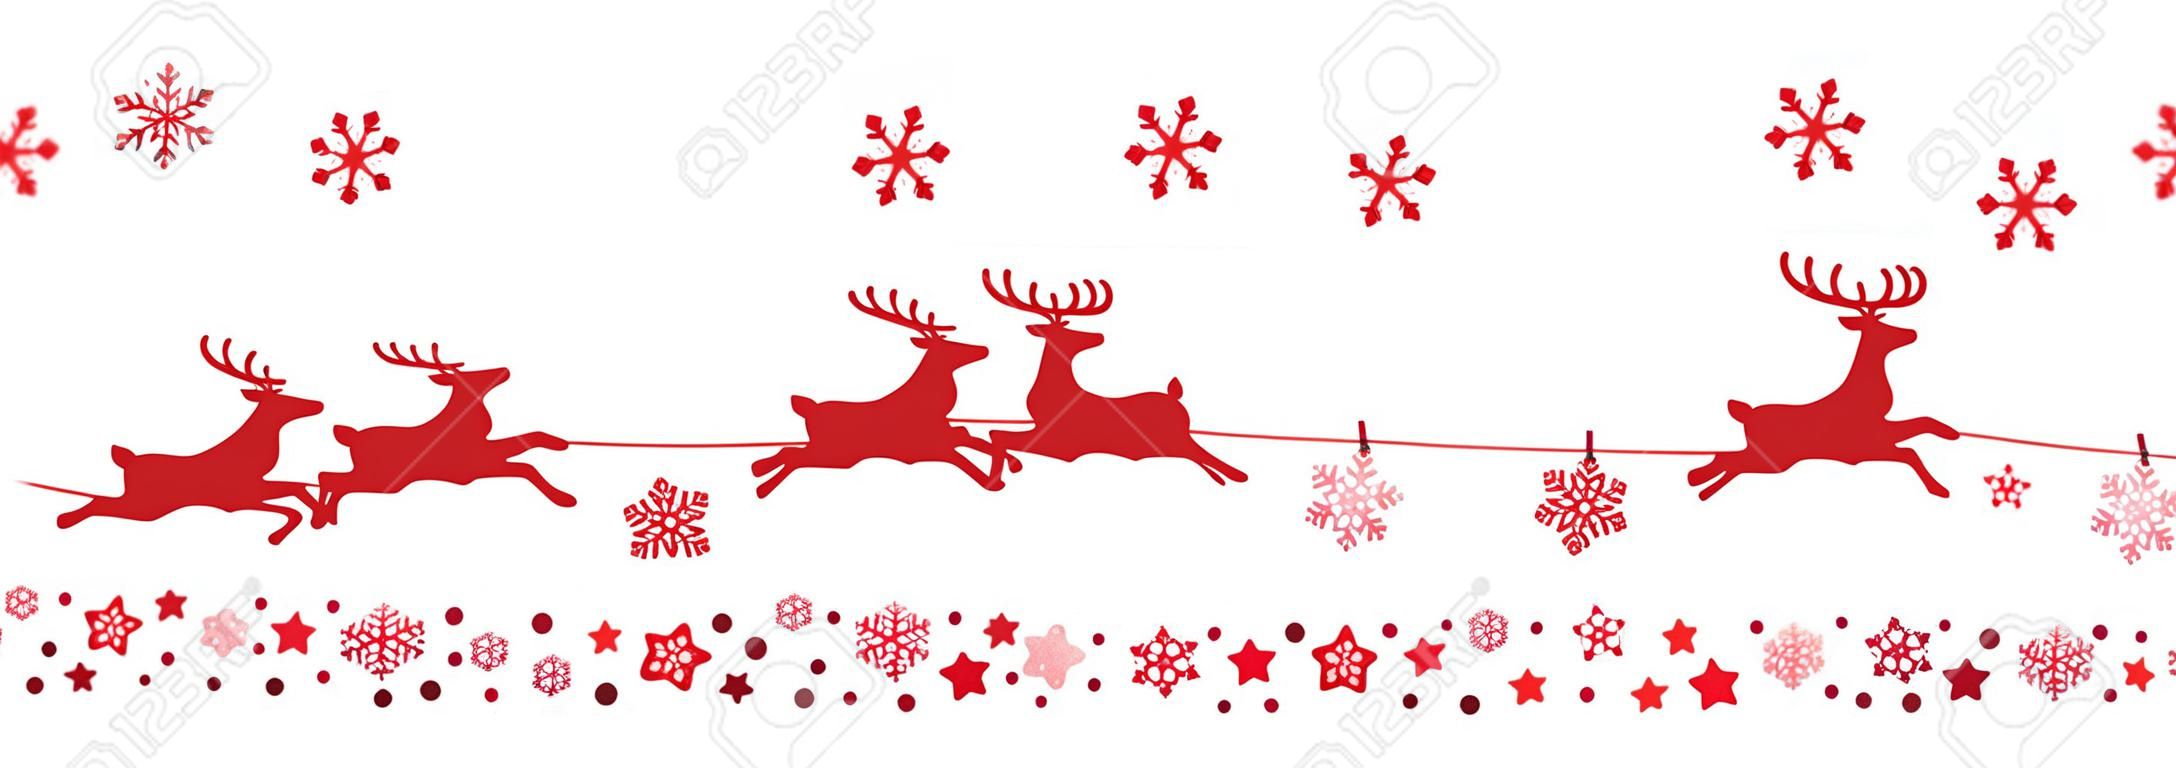 Santa Schlitten Rentiere fliegen Schneeflocken rot schatten